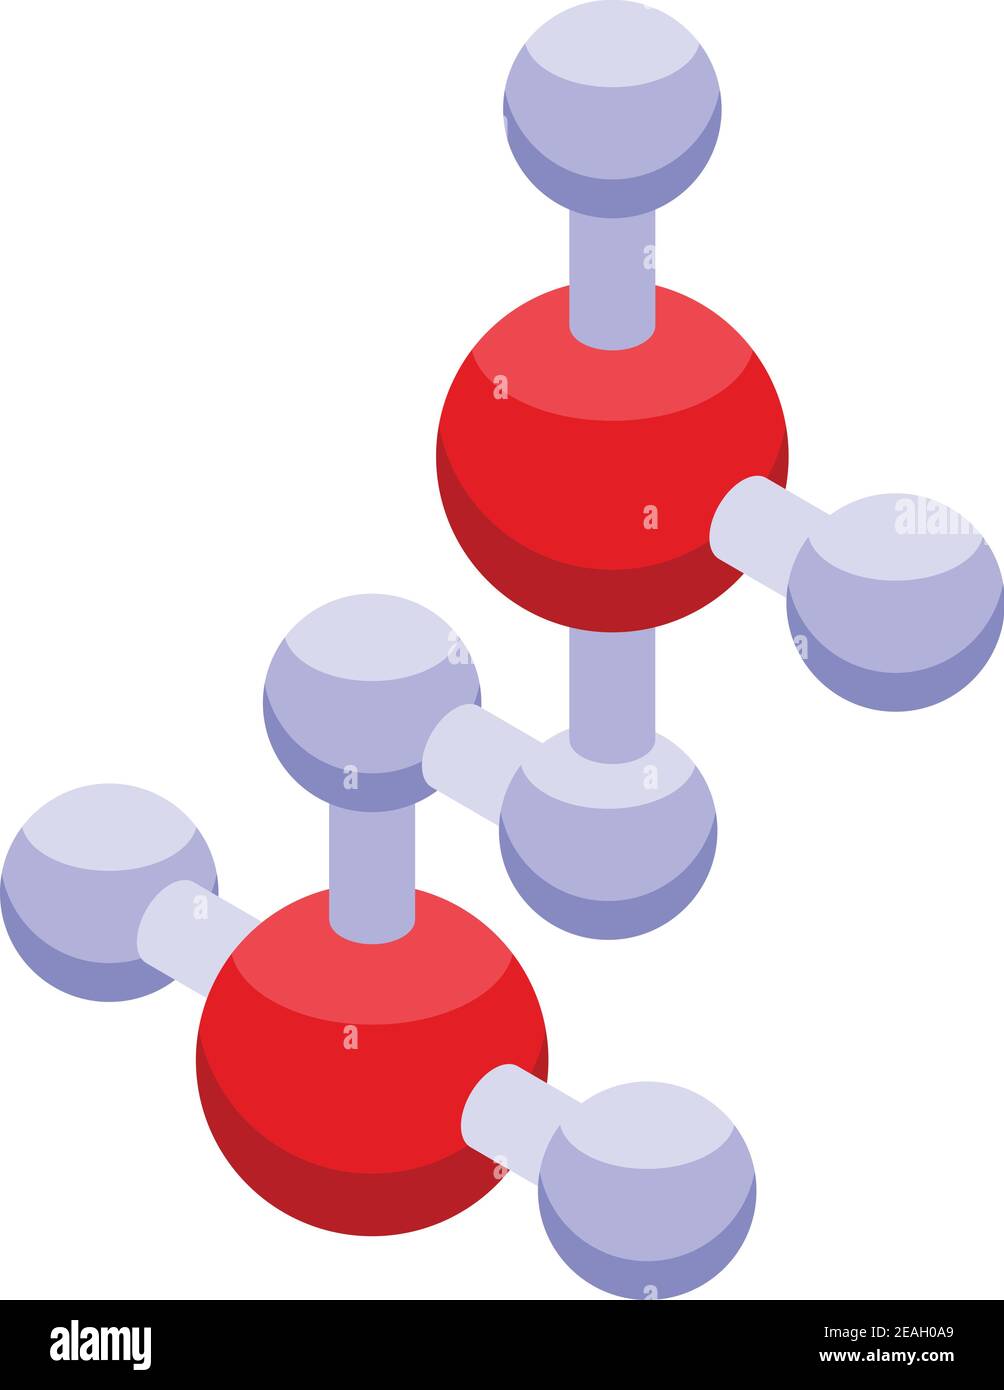 Icona atomi biodegradabili. Icona vettoriale isometrica degli atomi biodegradabili per la progettazione del nastro isolata su sfondo bianco Illustrazione Vettoriale